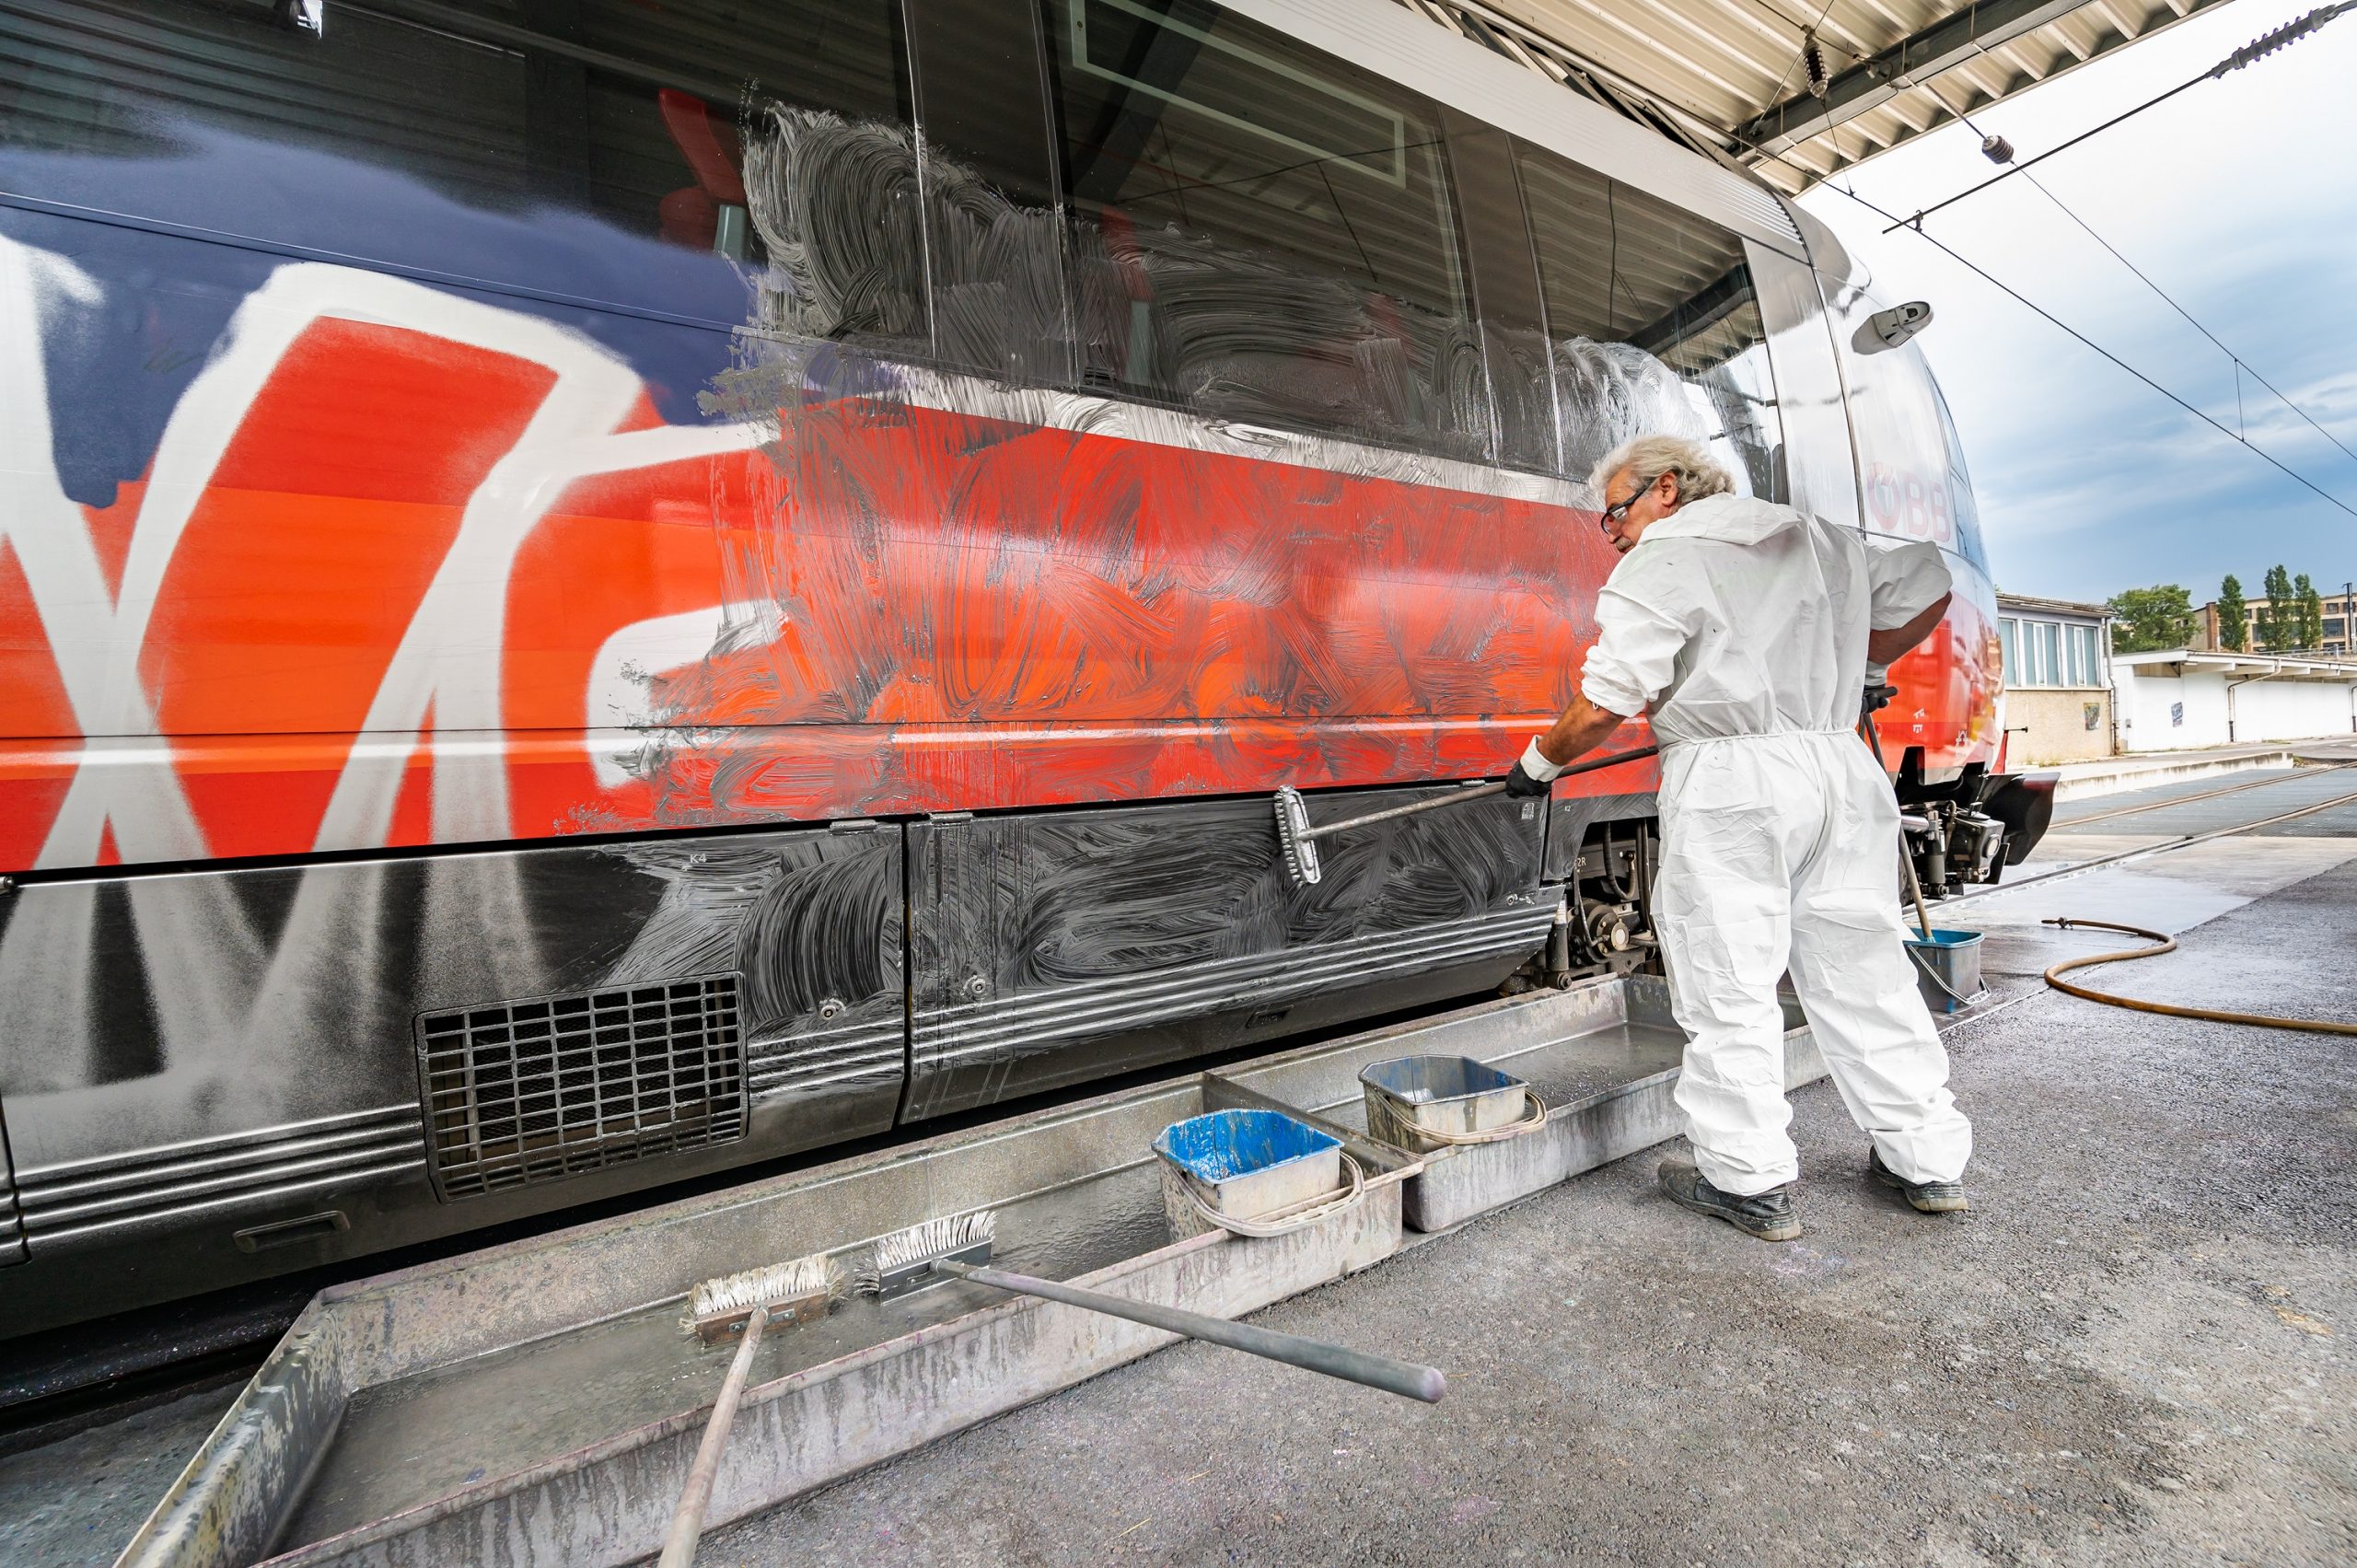 Graffiti op treinen blijft ook in Nederland miljoenenprobleem